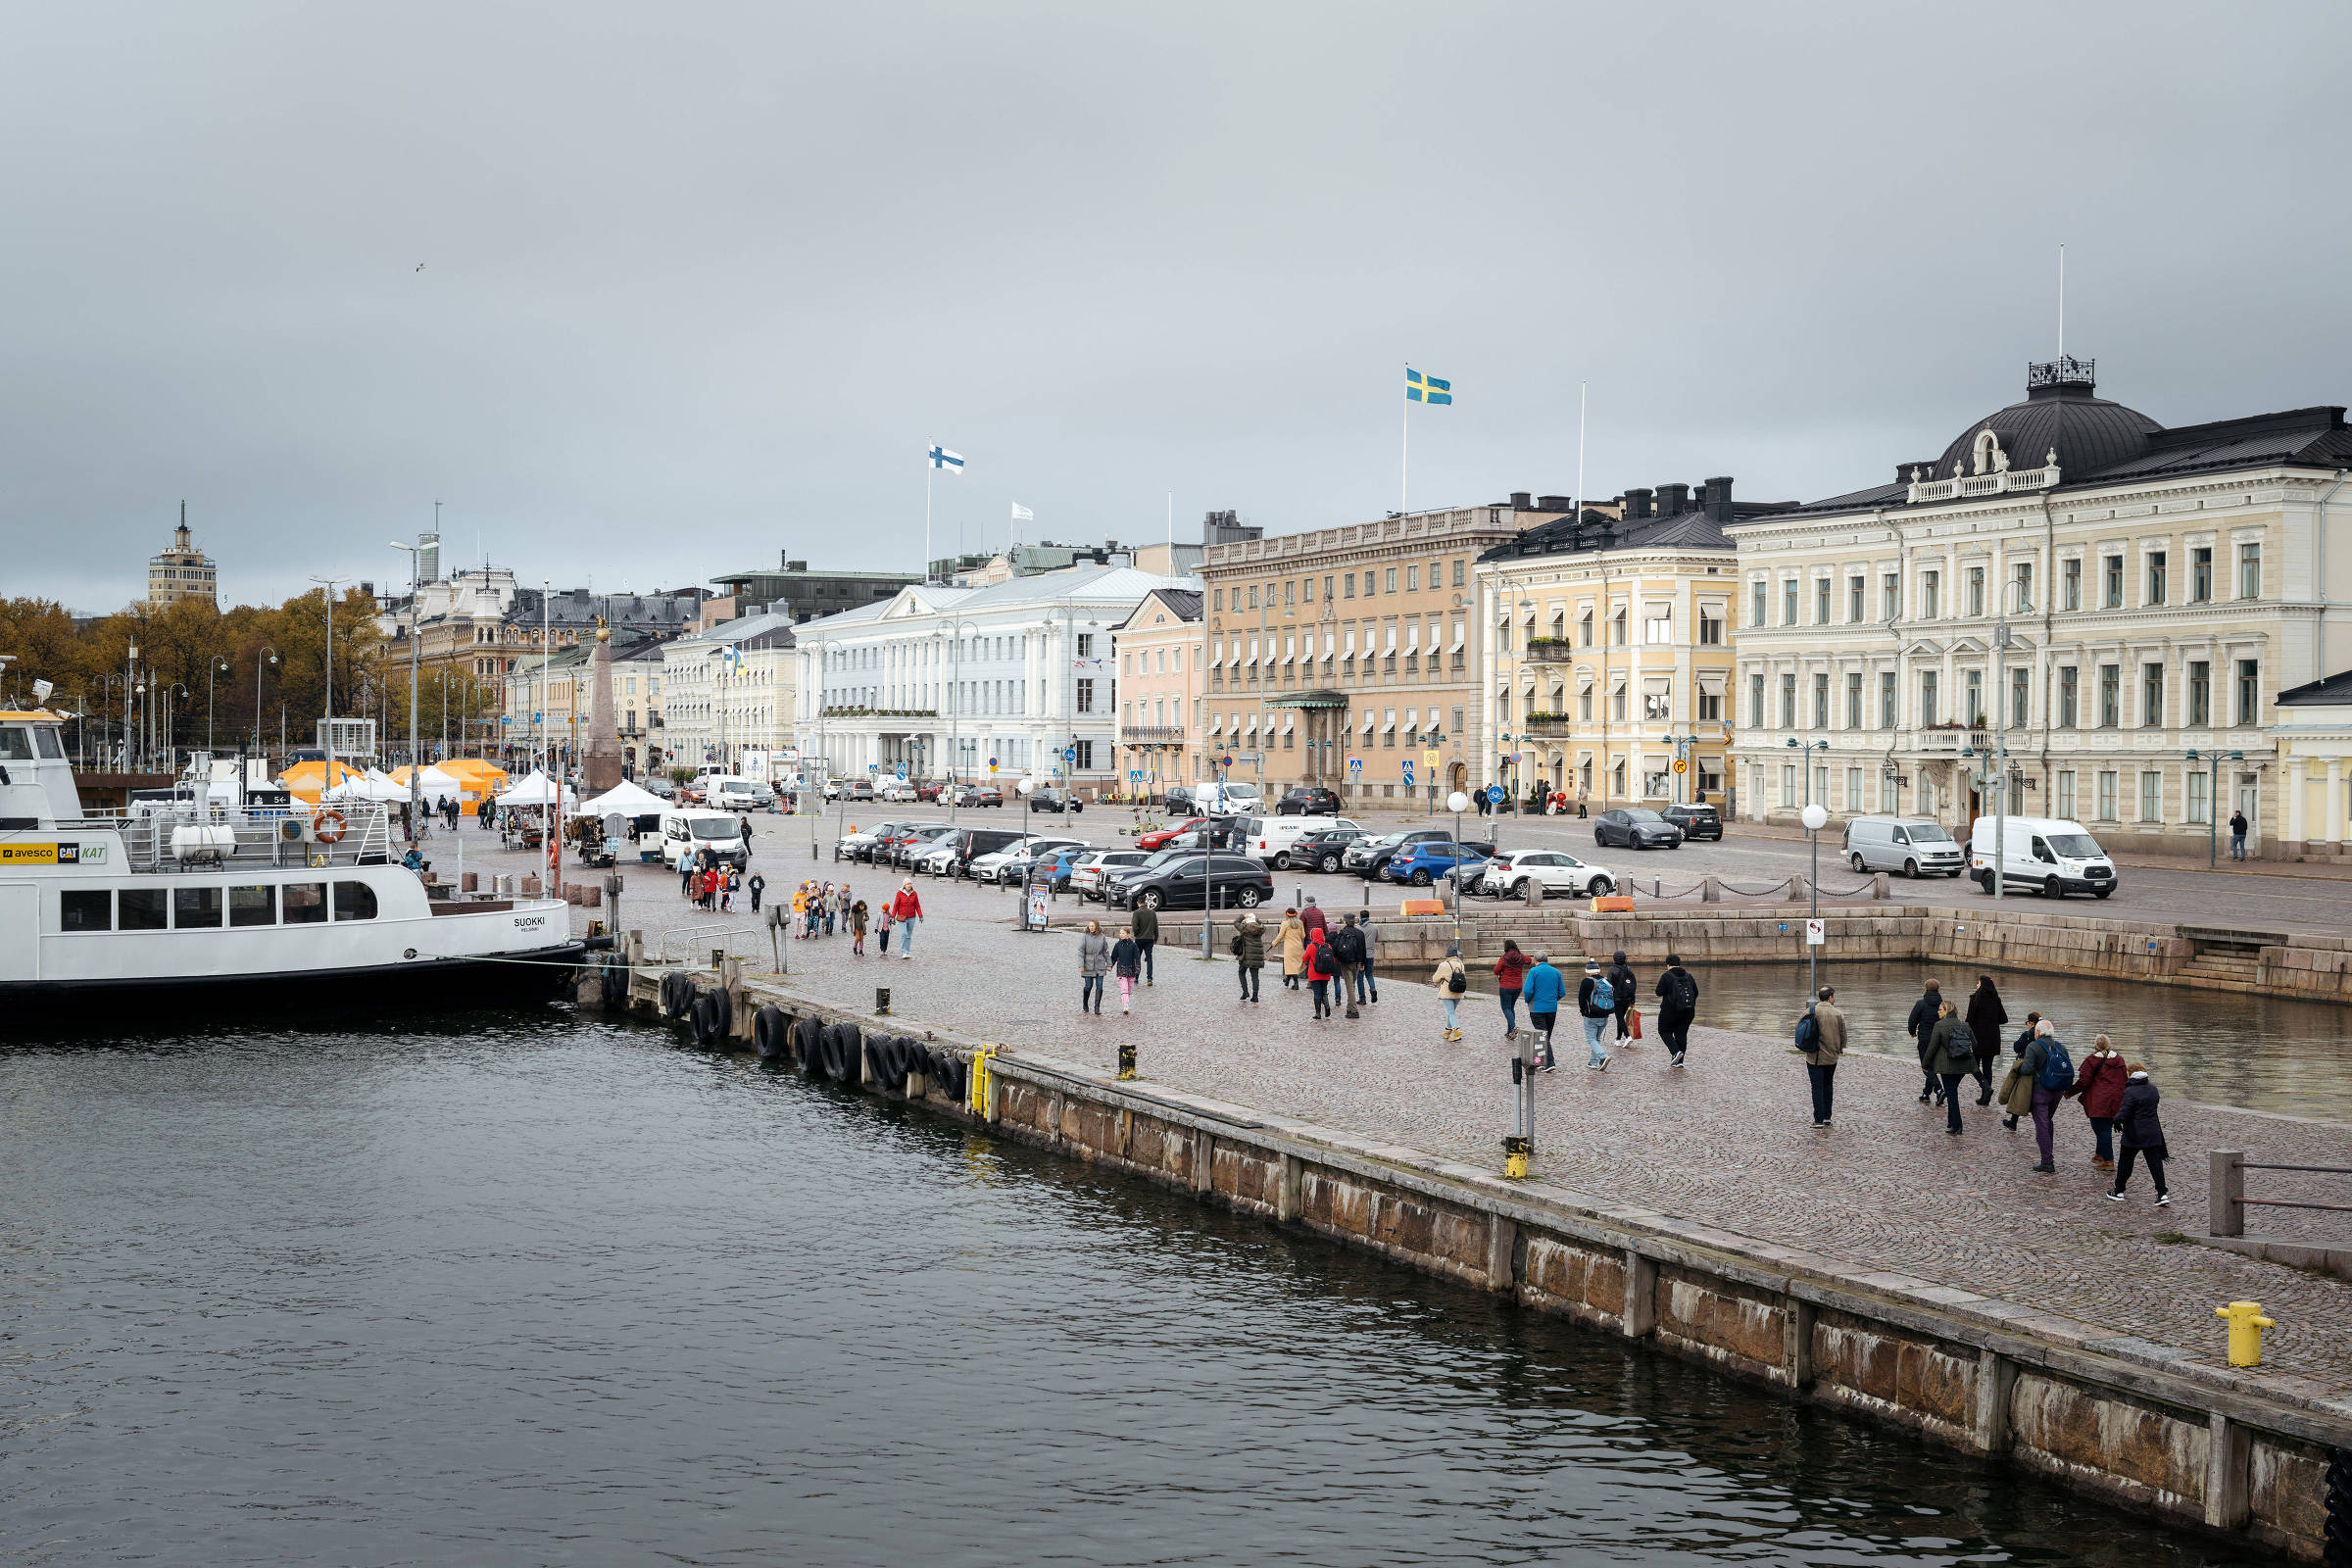 27 Fotos provando que a Escandinávia é diferente de qualquer outra